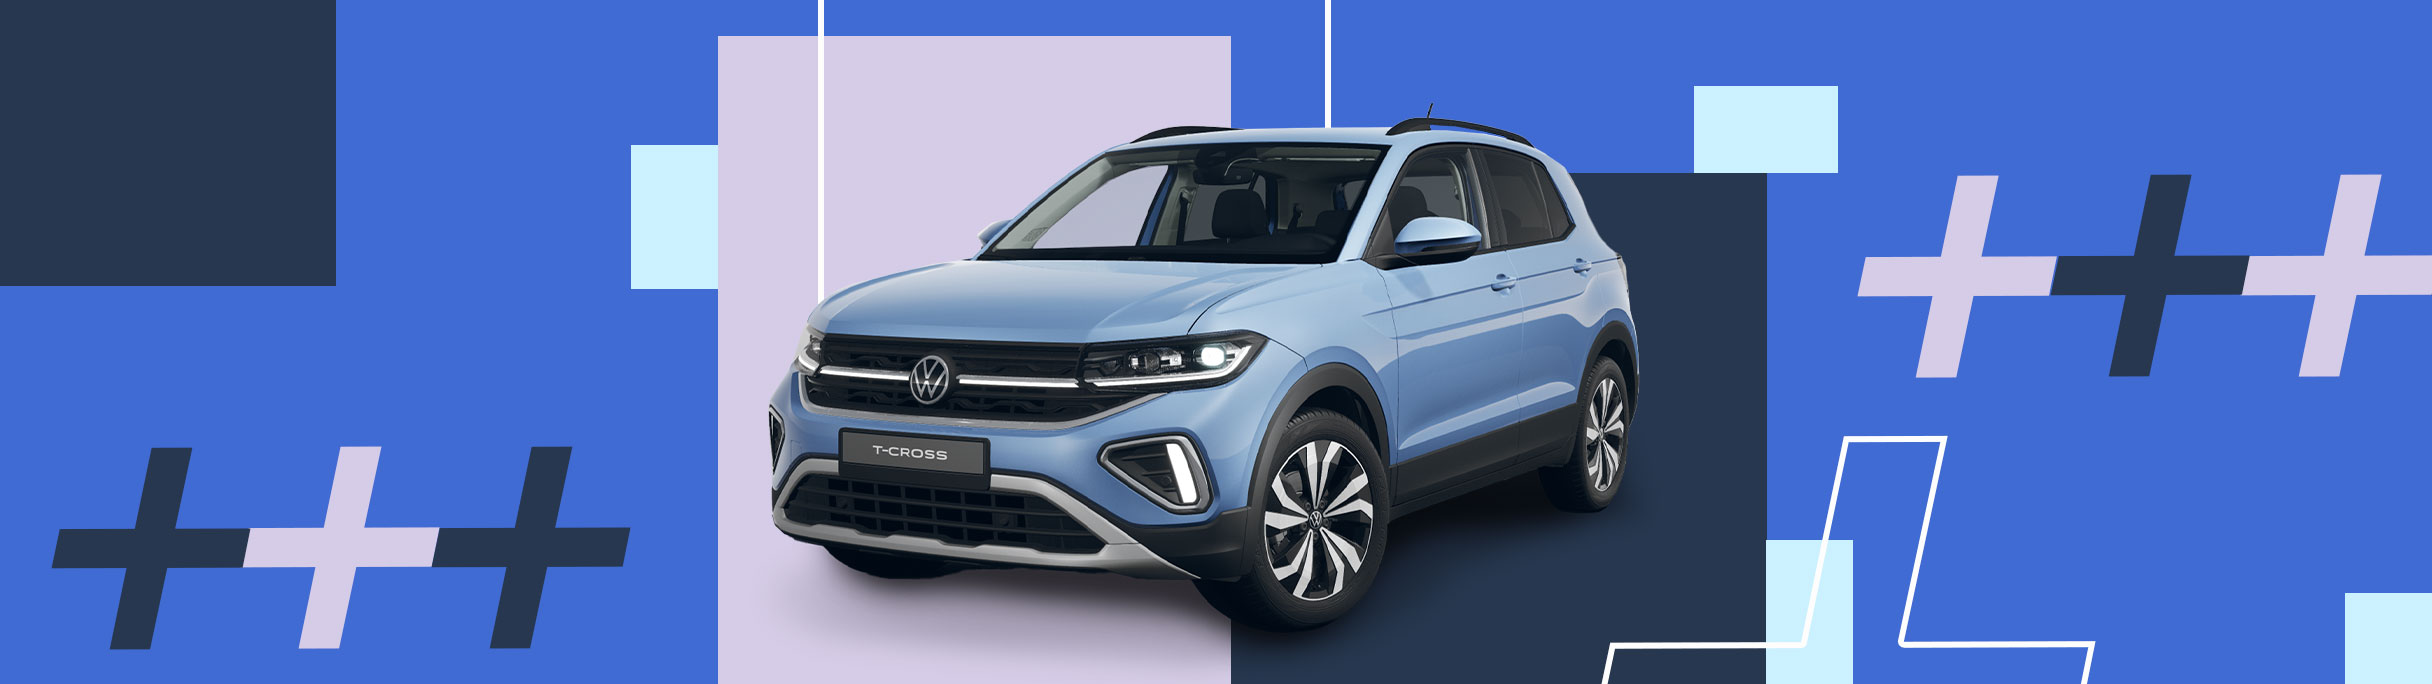 Promozione Volkswagen Nuova T-Cross